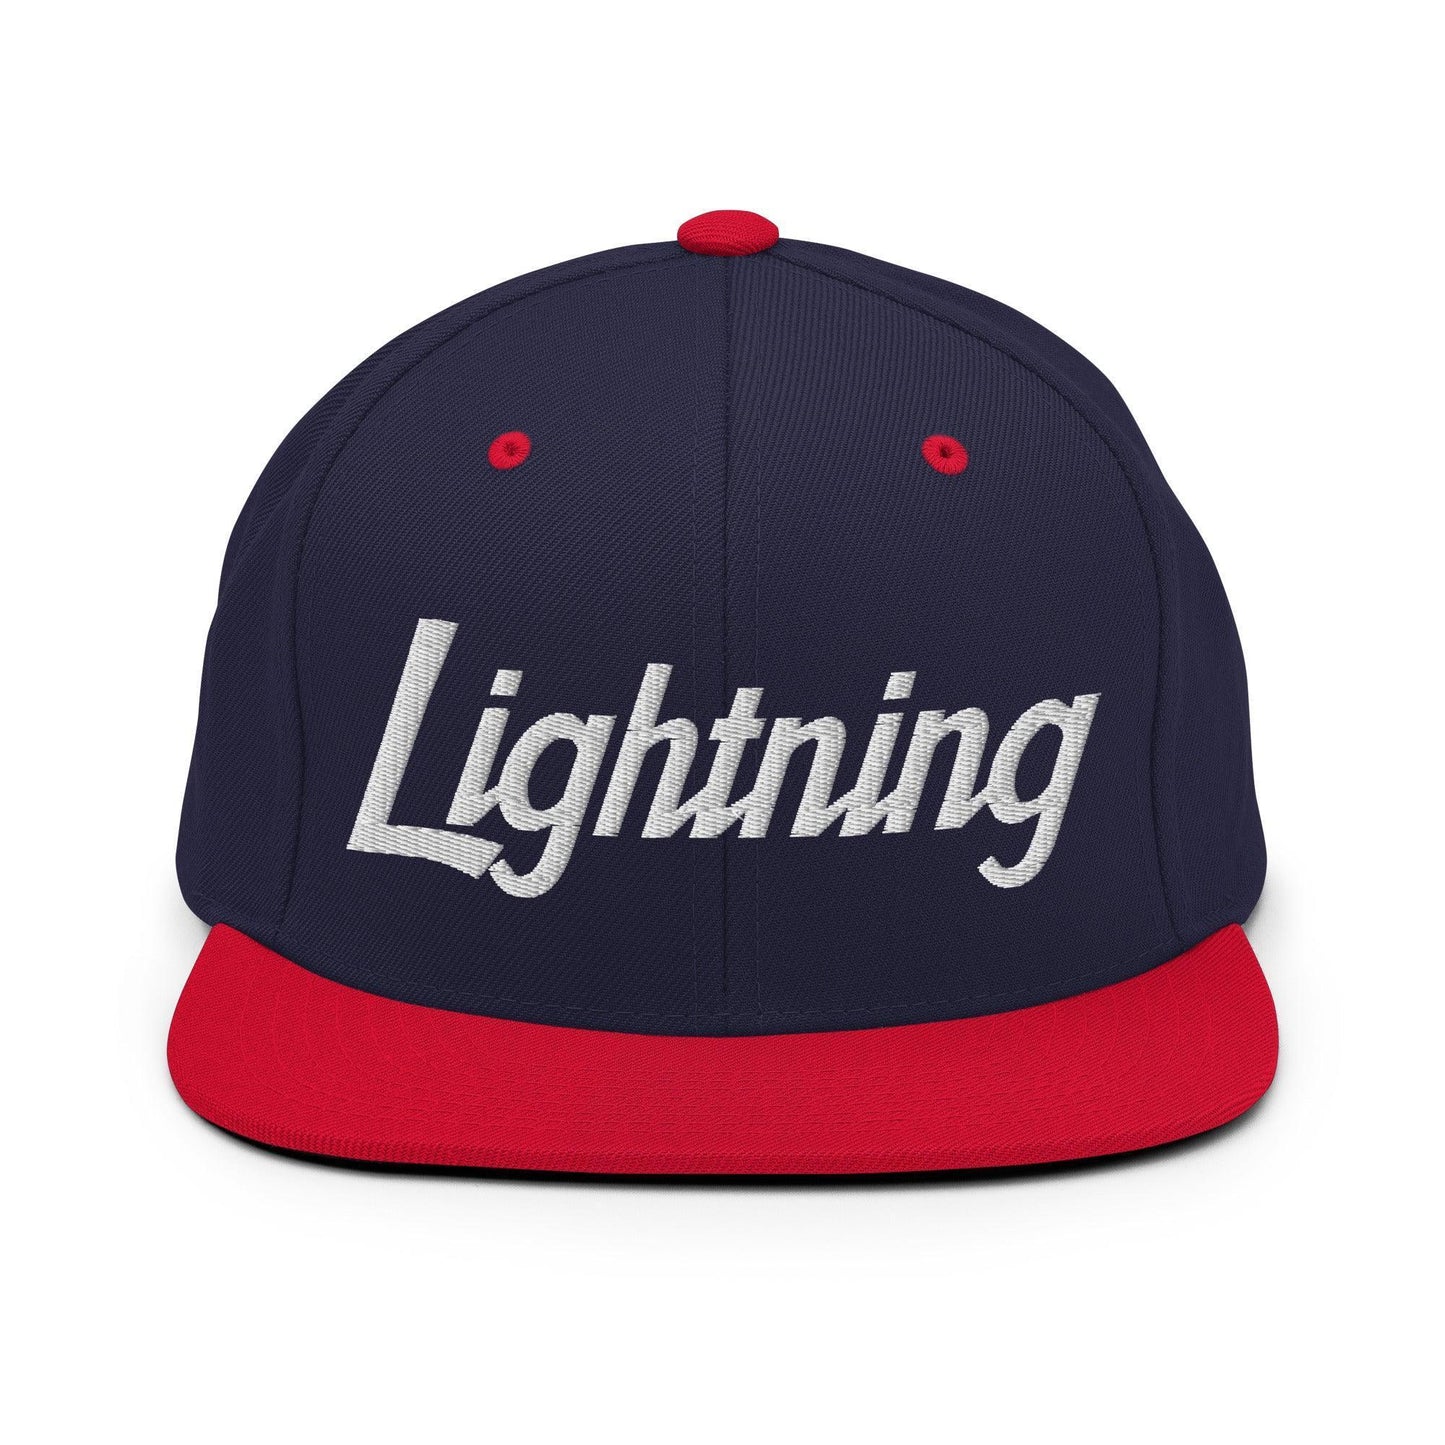 Lightning School Mascot Script Snapback Hat Navy/ Red